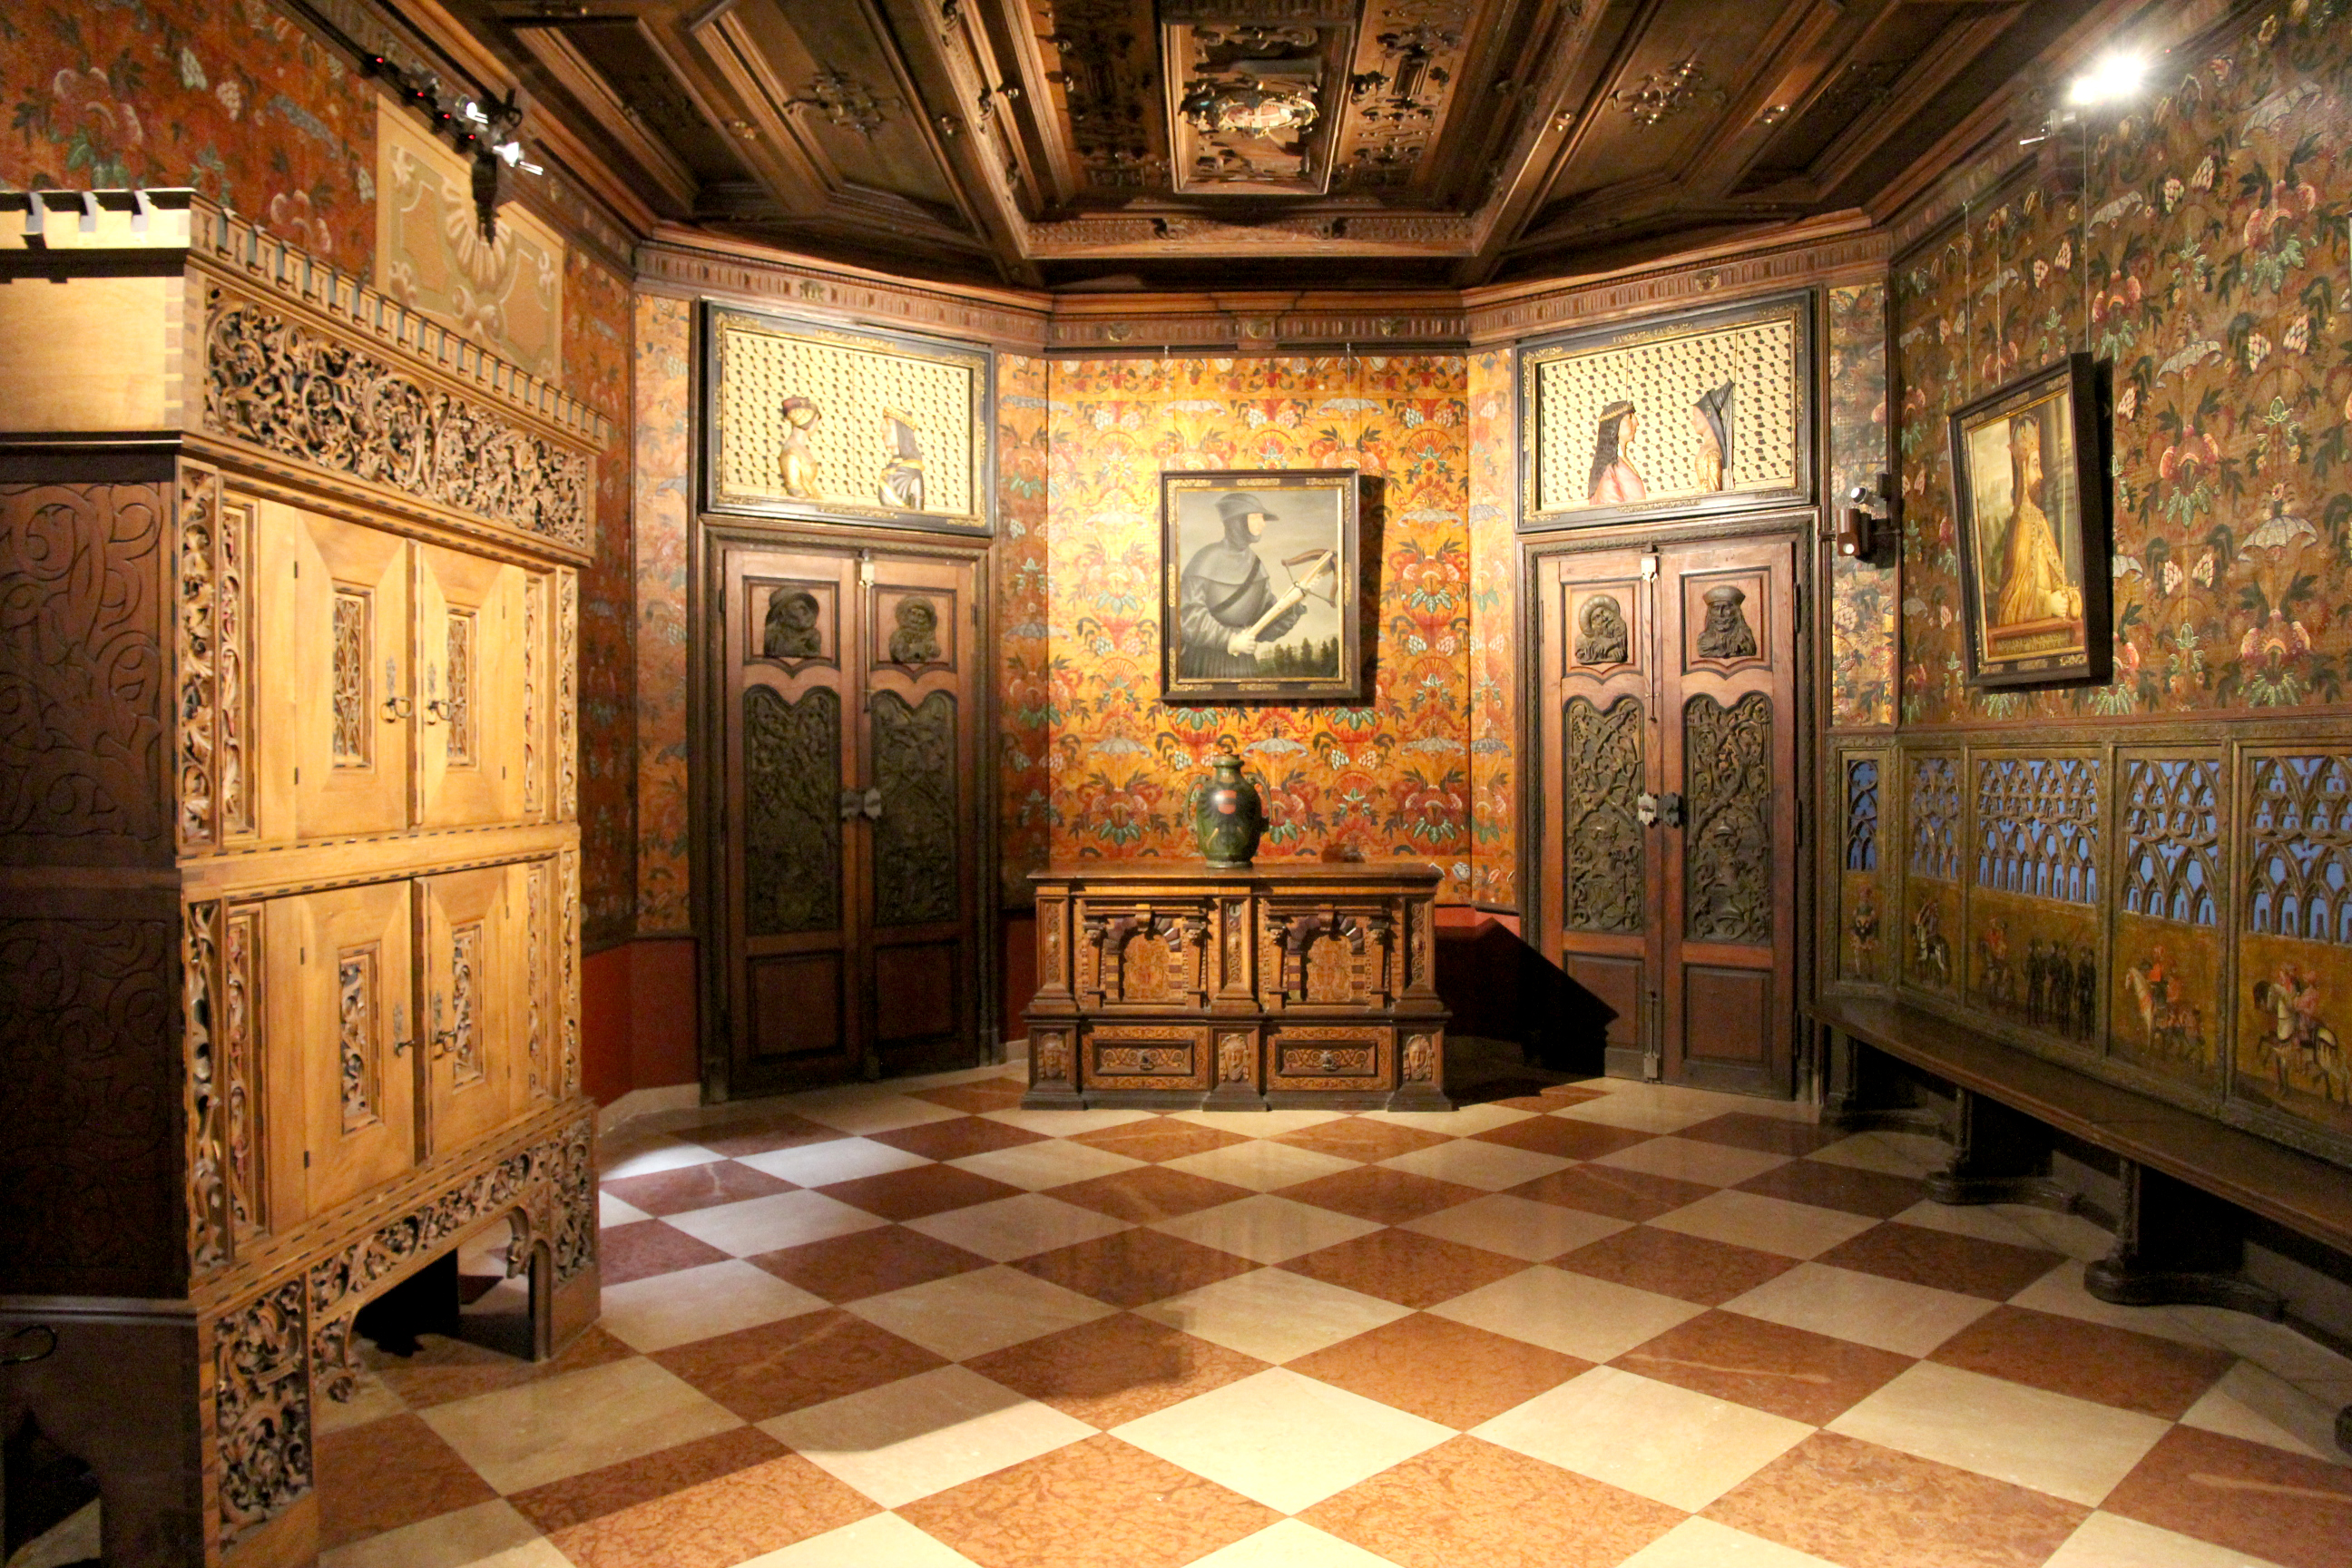 Ausstellungsraum im Franzensburg Museum. Zu sehen sind zwei an den Wänden hängende Porträt Gemälde in einem Zimmer, in dem jedes Detail, inklusive Decke und Möbel, aufwendig verziert ist.